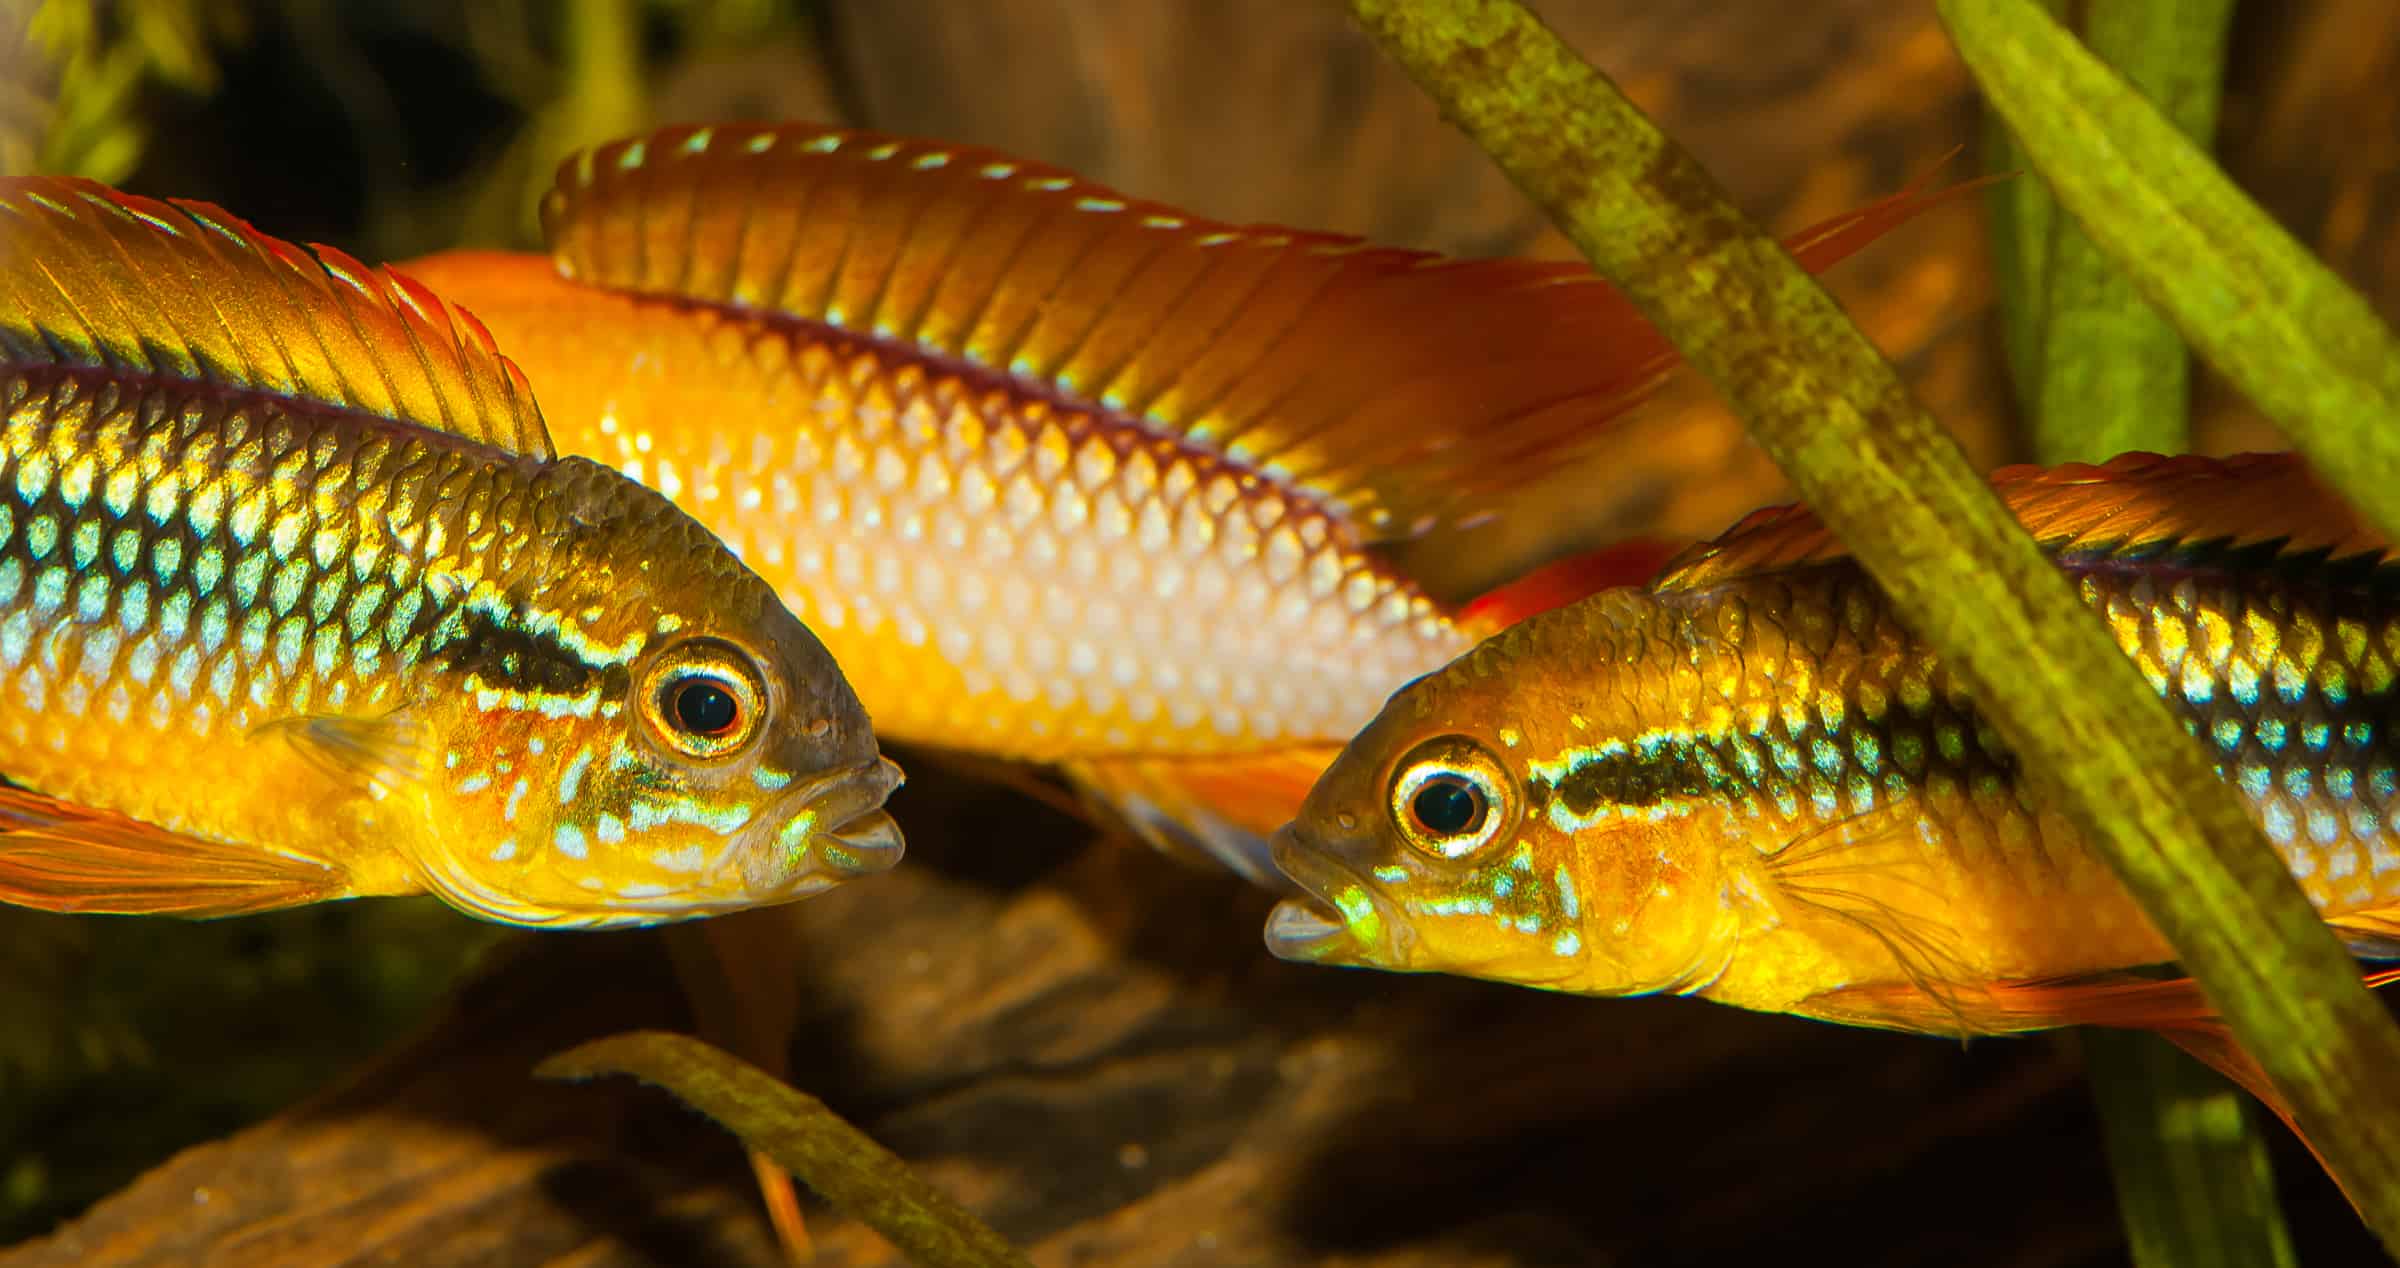 Zwergbuntbarsche - kleine Fische groß in Farbe und Verhalten!